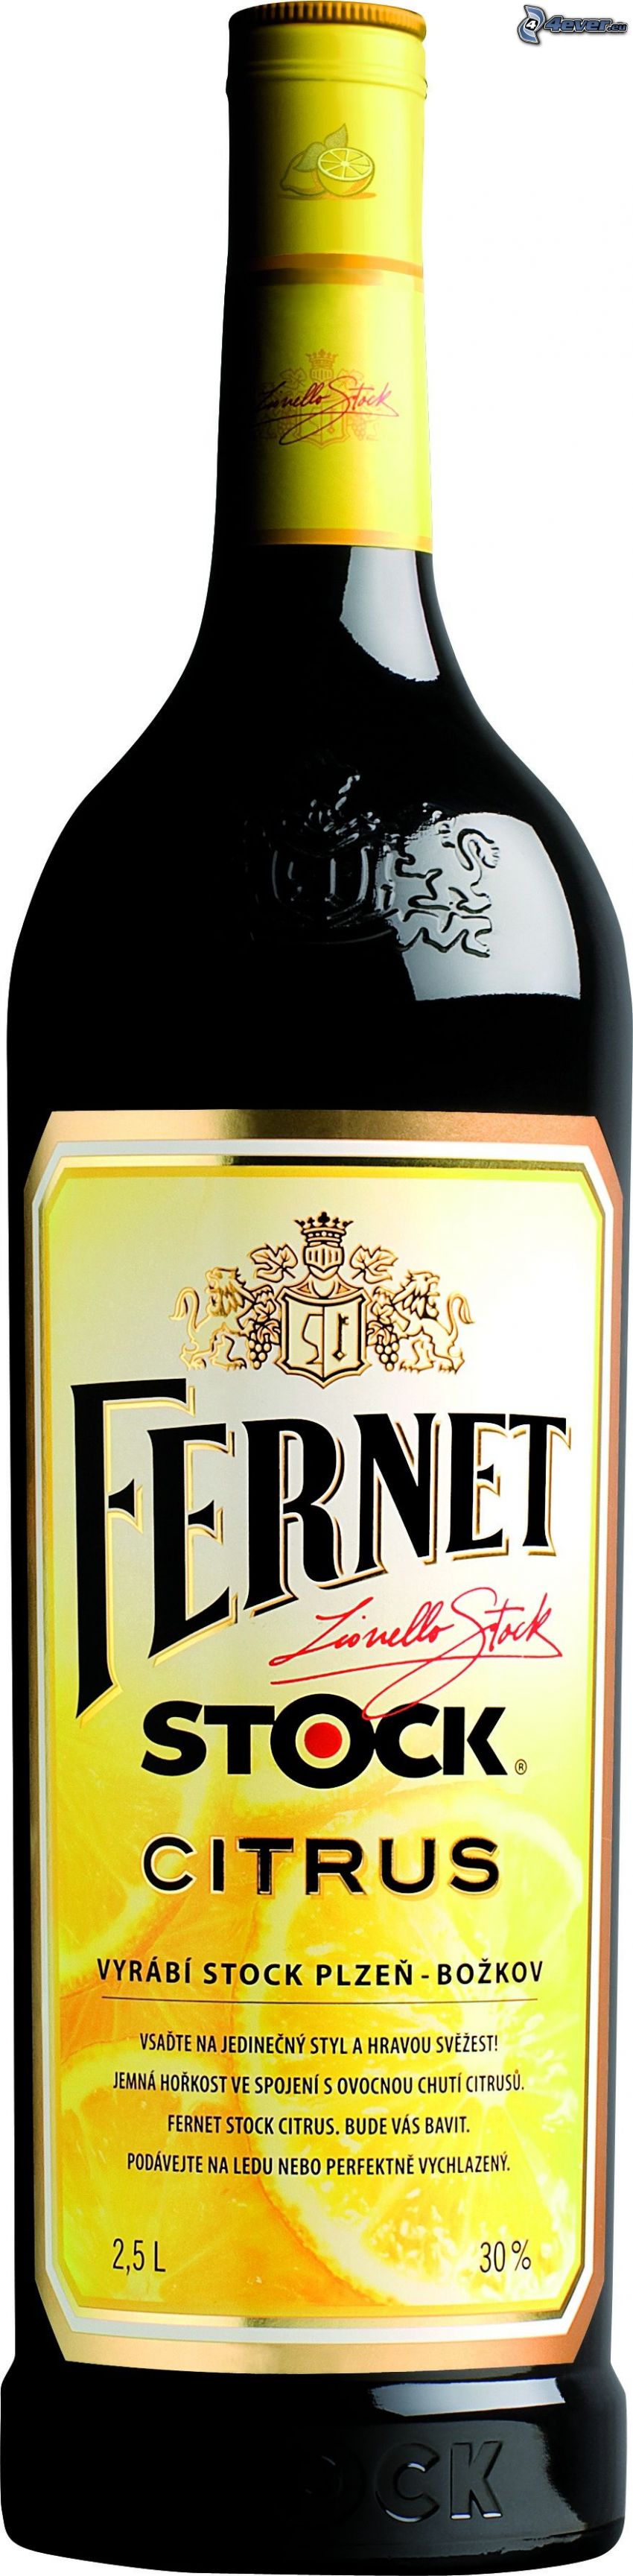 Fernet Stock Citrus, butelka, alkohol